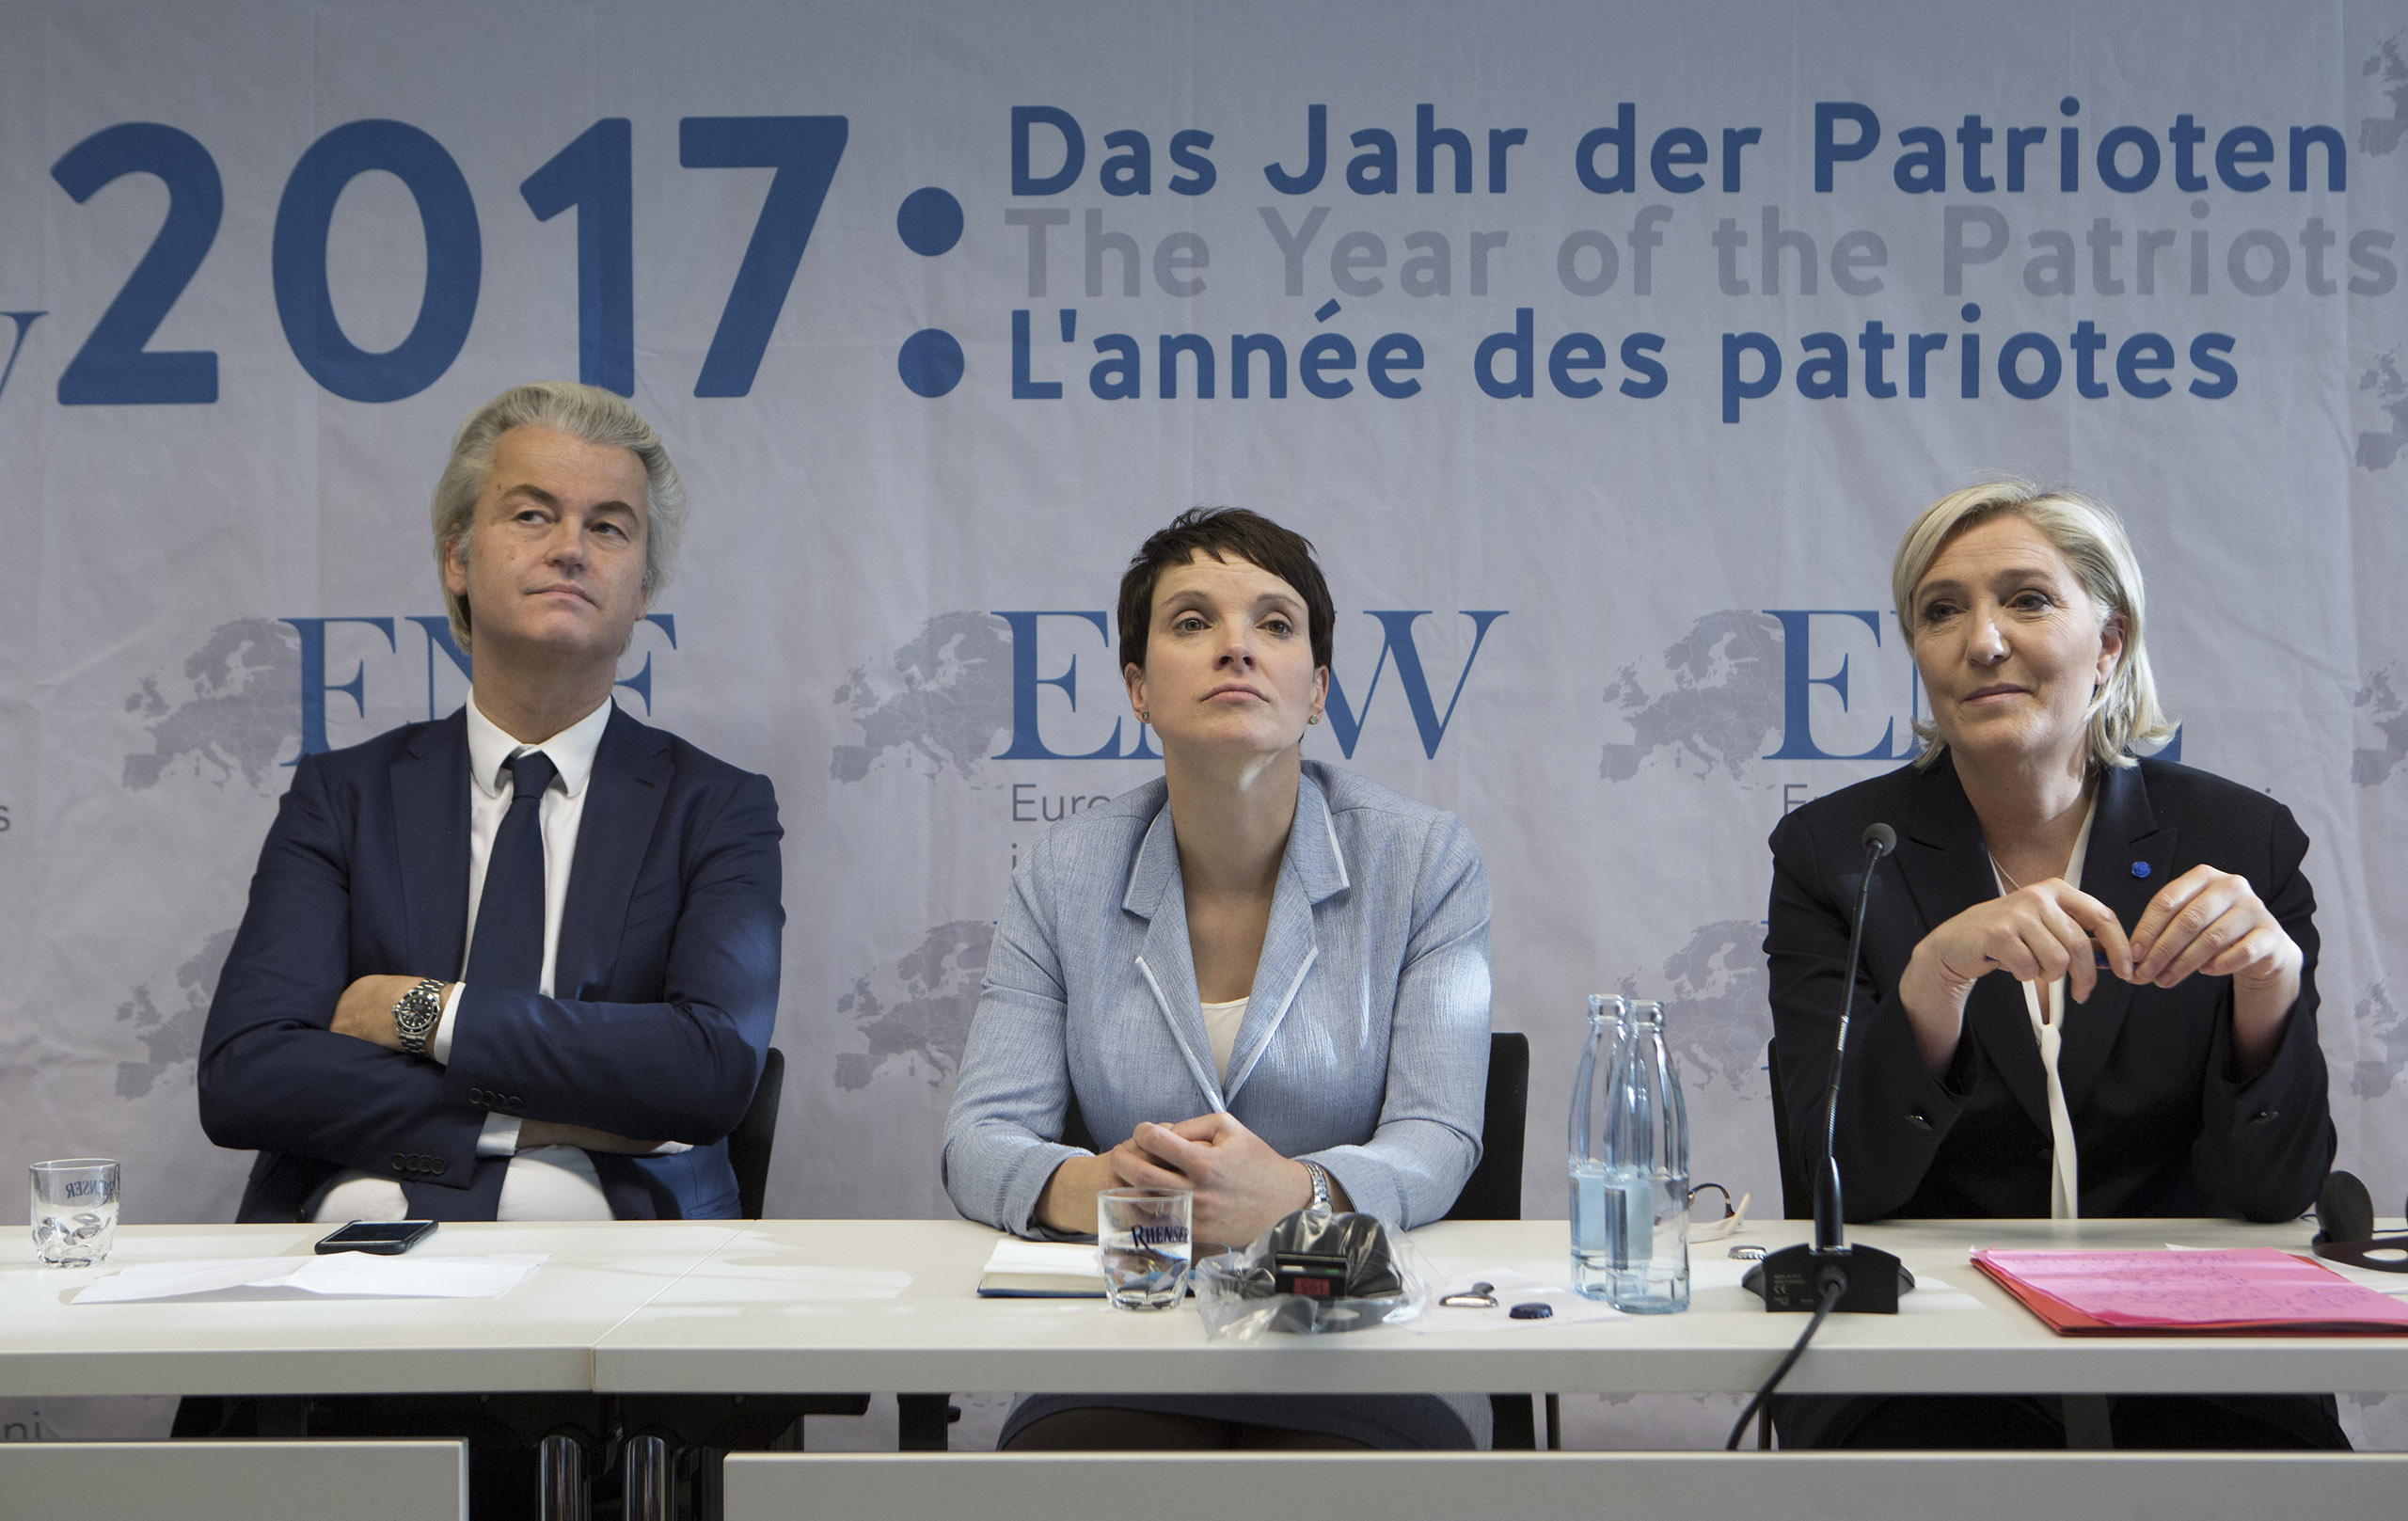 Geert Wilders, chairman of the Partij voor Vrijheid (Netherlands), Frauke Petry (AfD) and Marine Le Pen (Front National) in France.